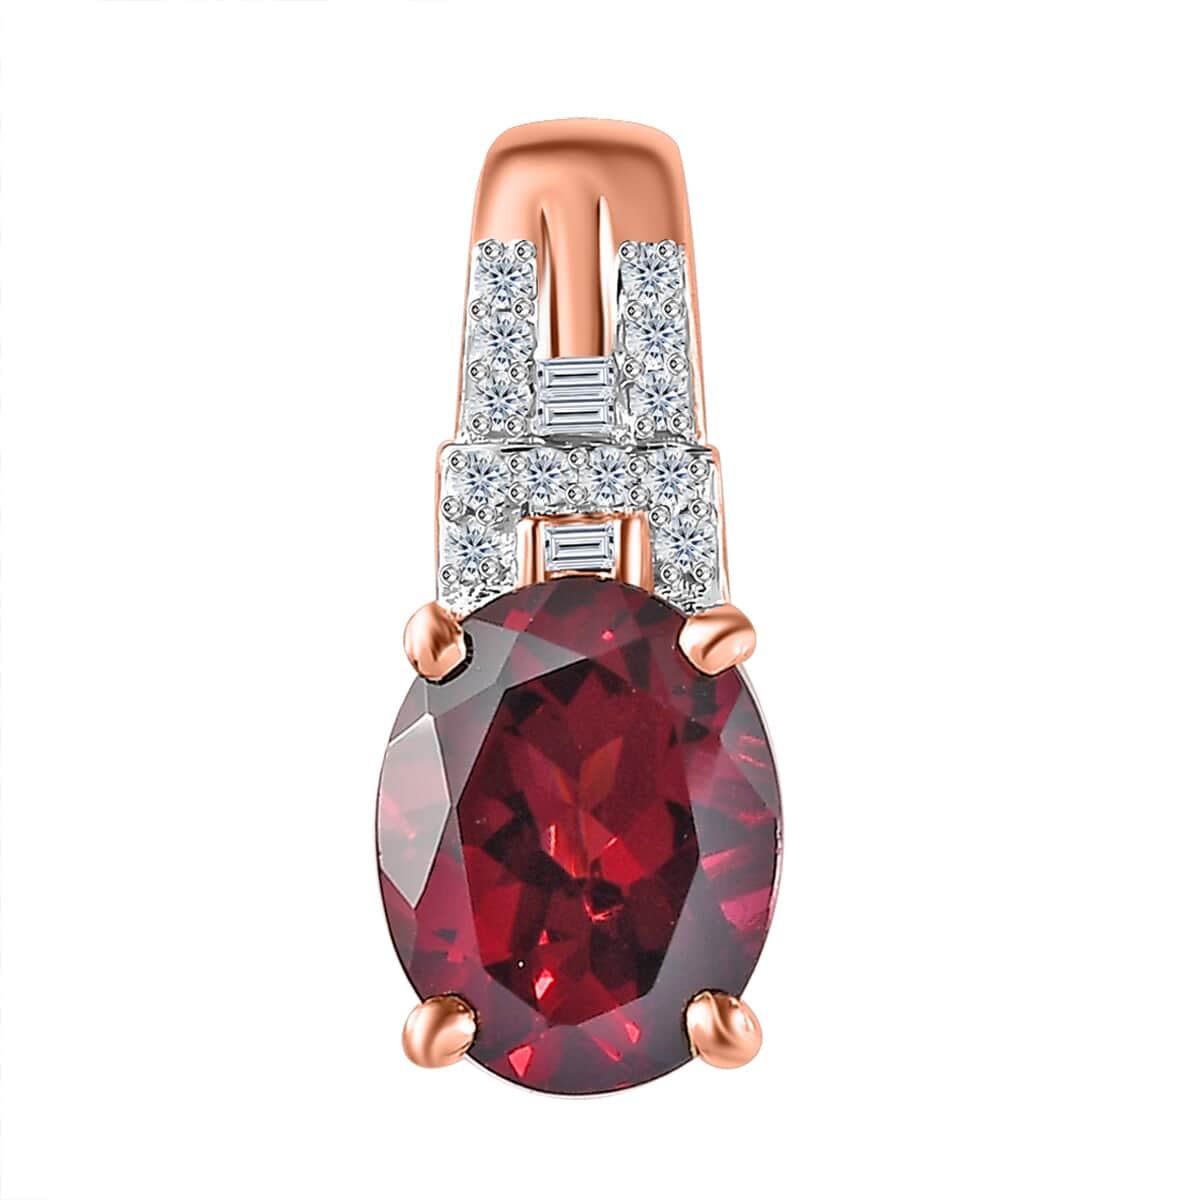 Luxoro 10K Rose Gold Premium Orissa Rhodolite Garnet and G-H I2 Diamond Pendant 2.30 ctw image number 0